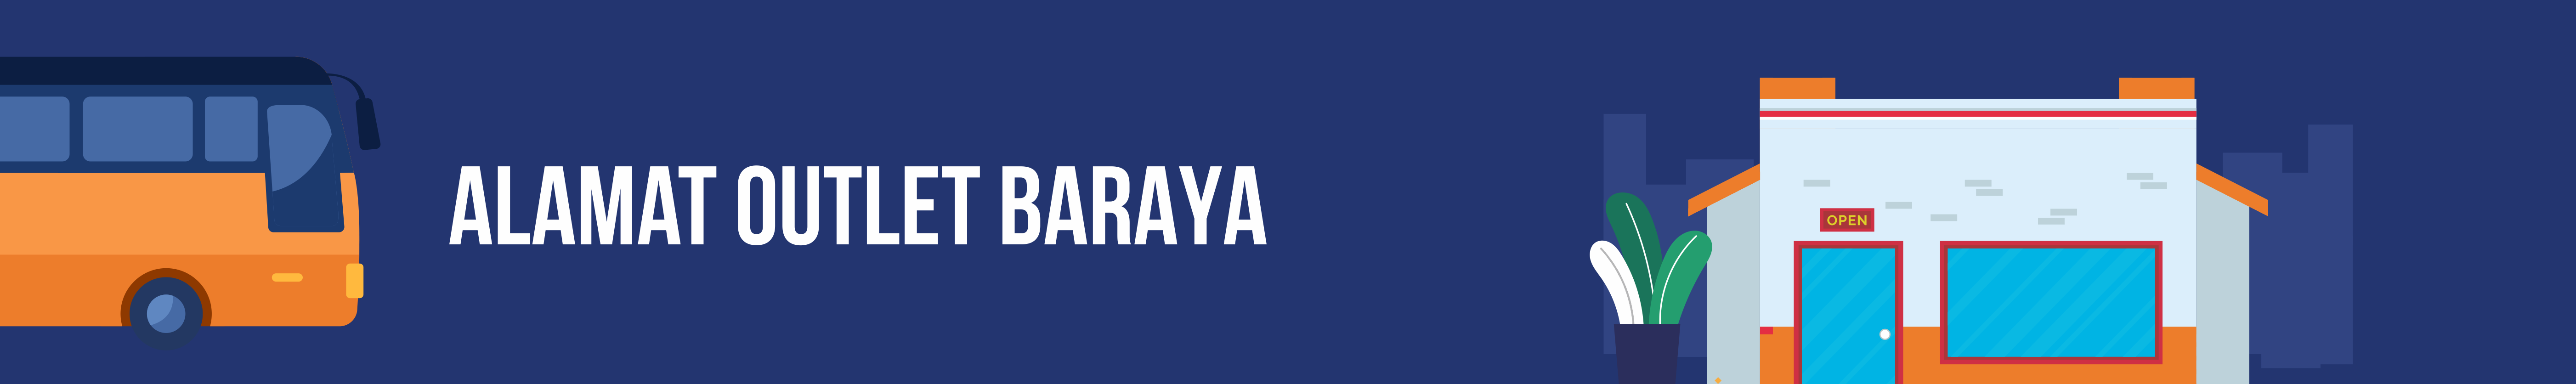 customer service baraya travel